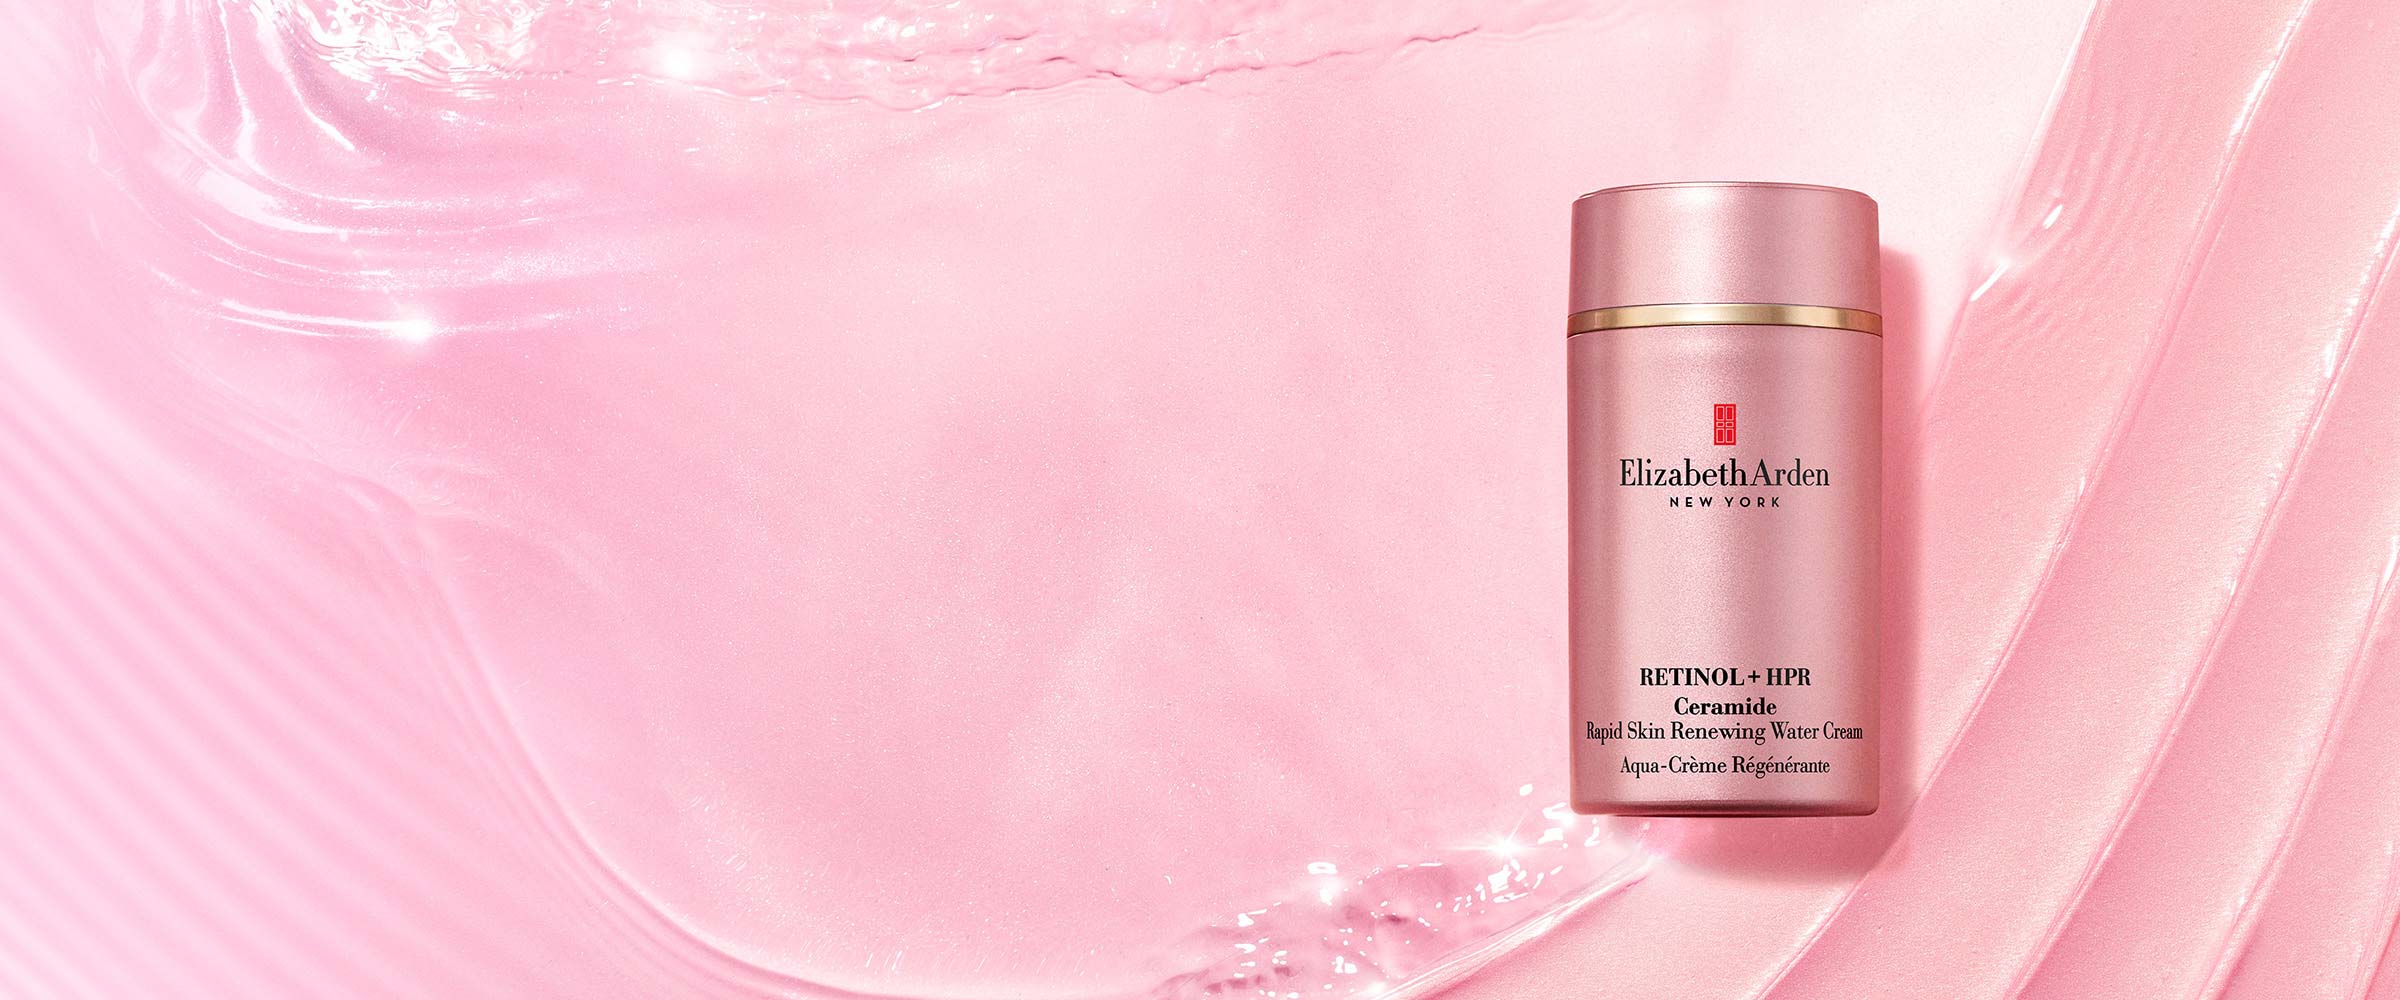 Retinol + HPR Ceramide Water Cream on a pink cream texured background